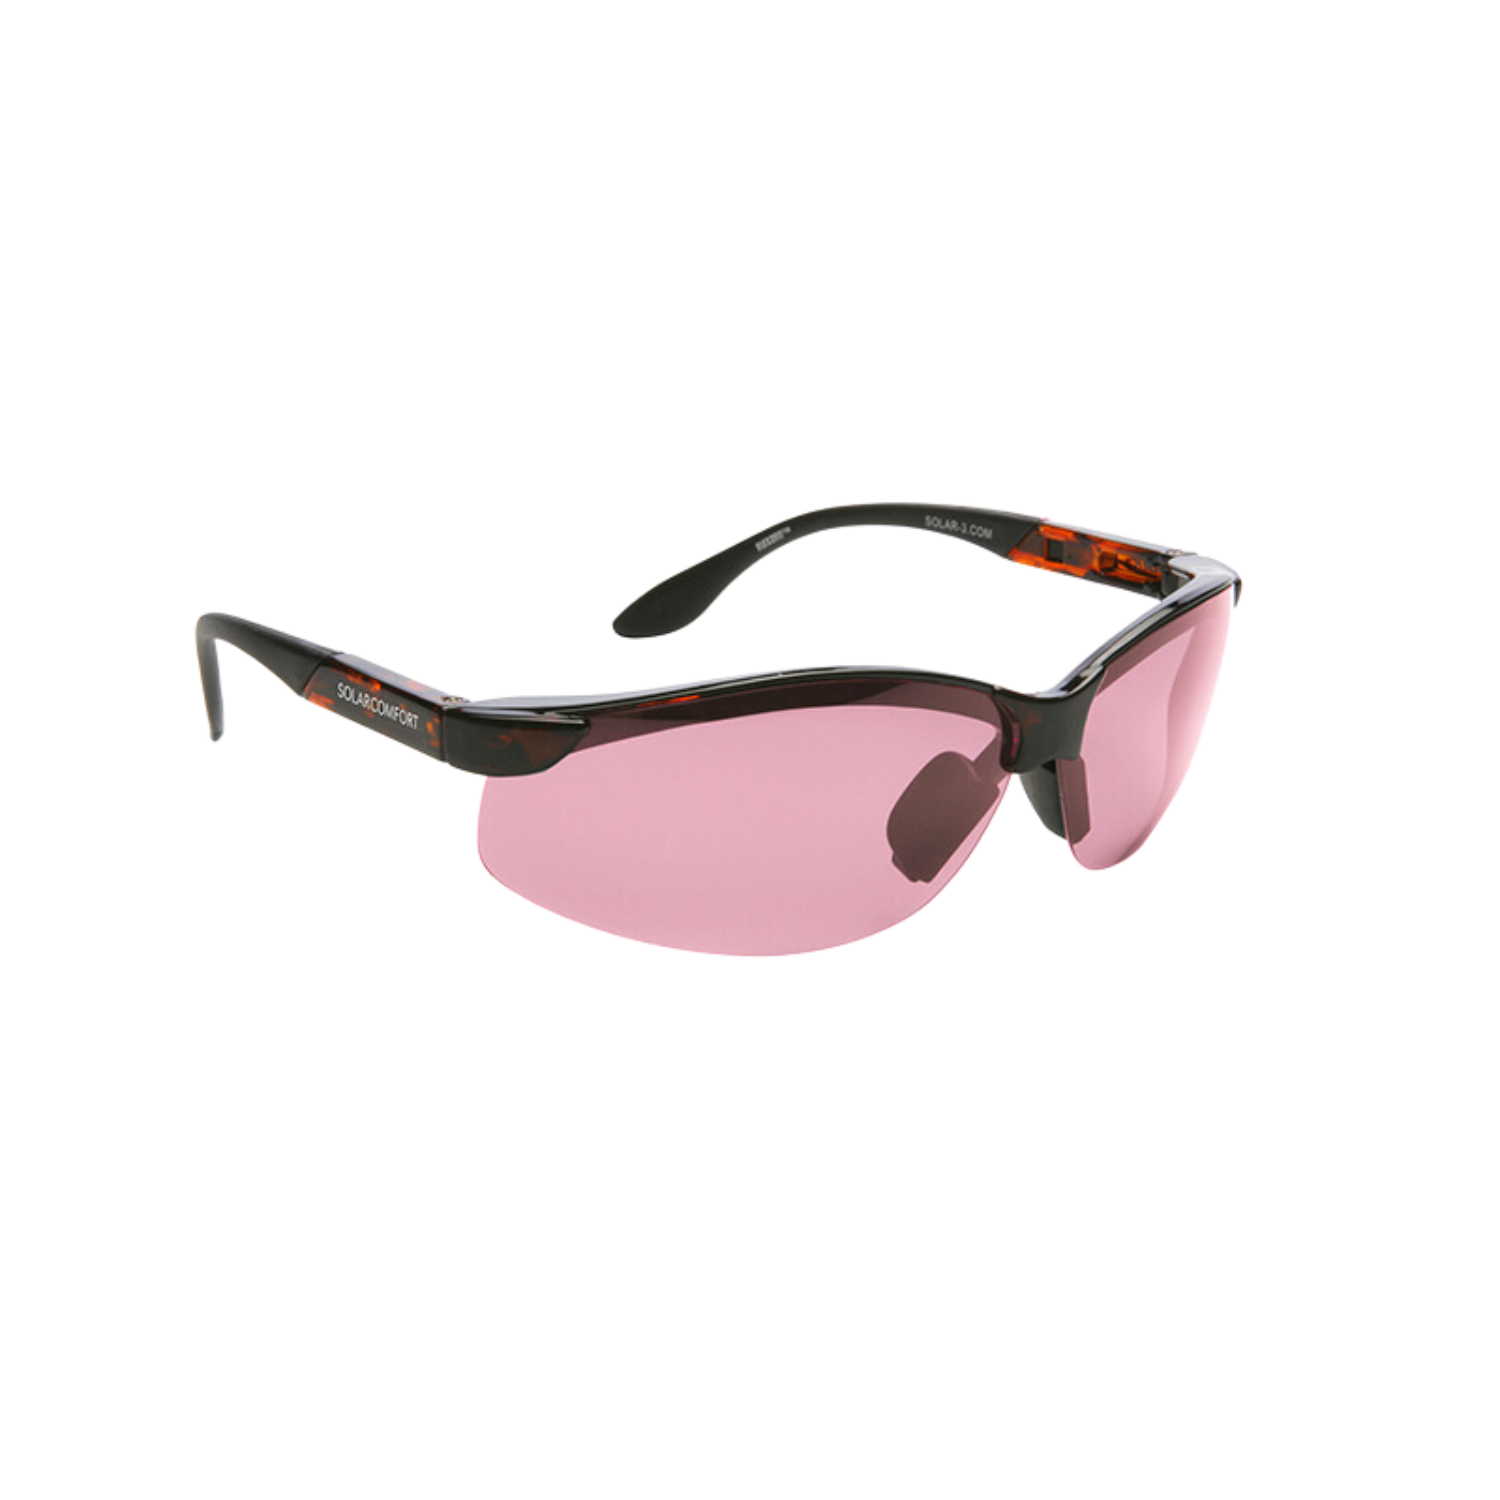 SolarComfort® FL-41 Glasses - Light Rose Filter